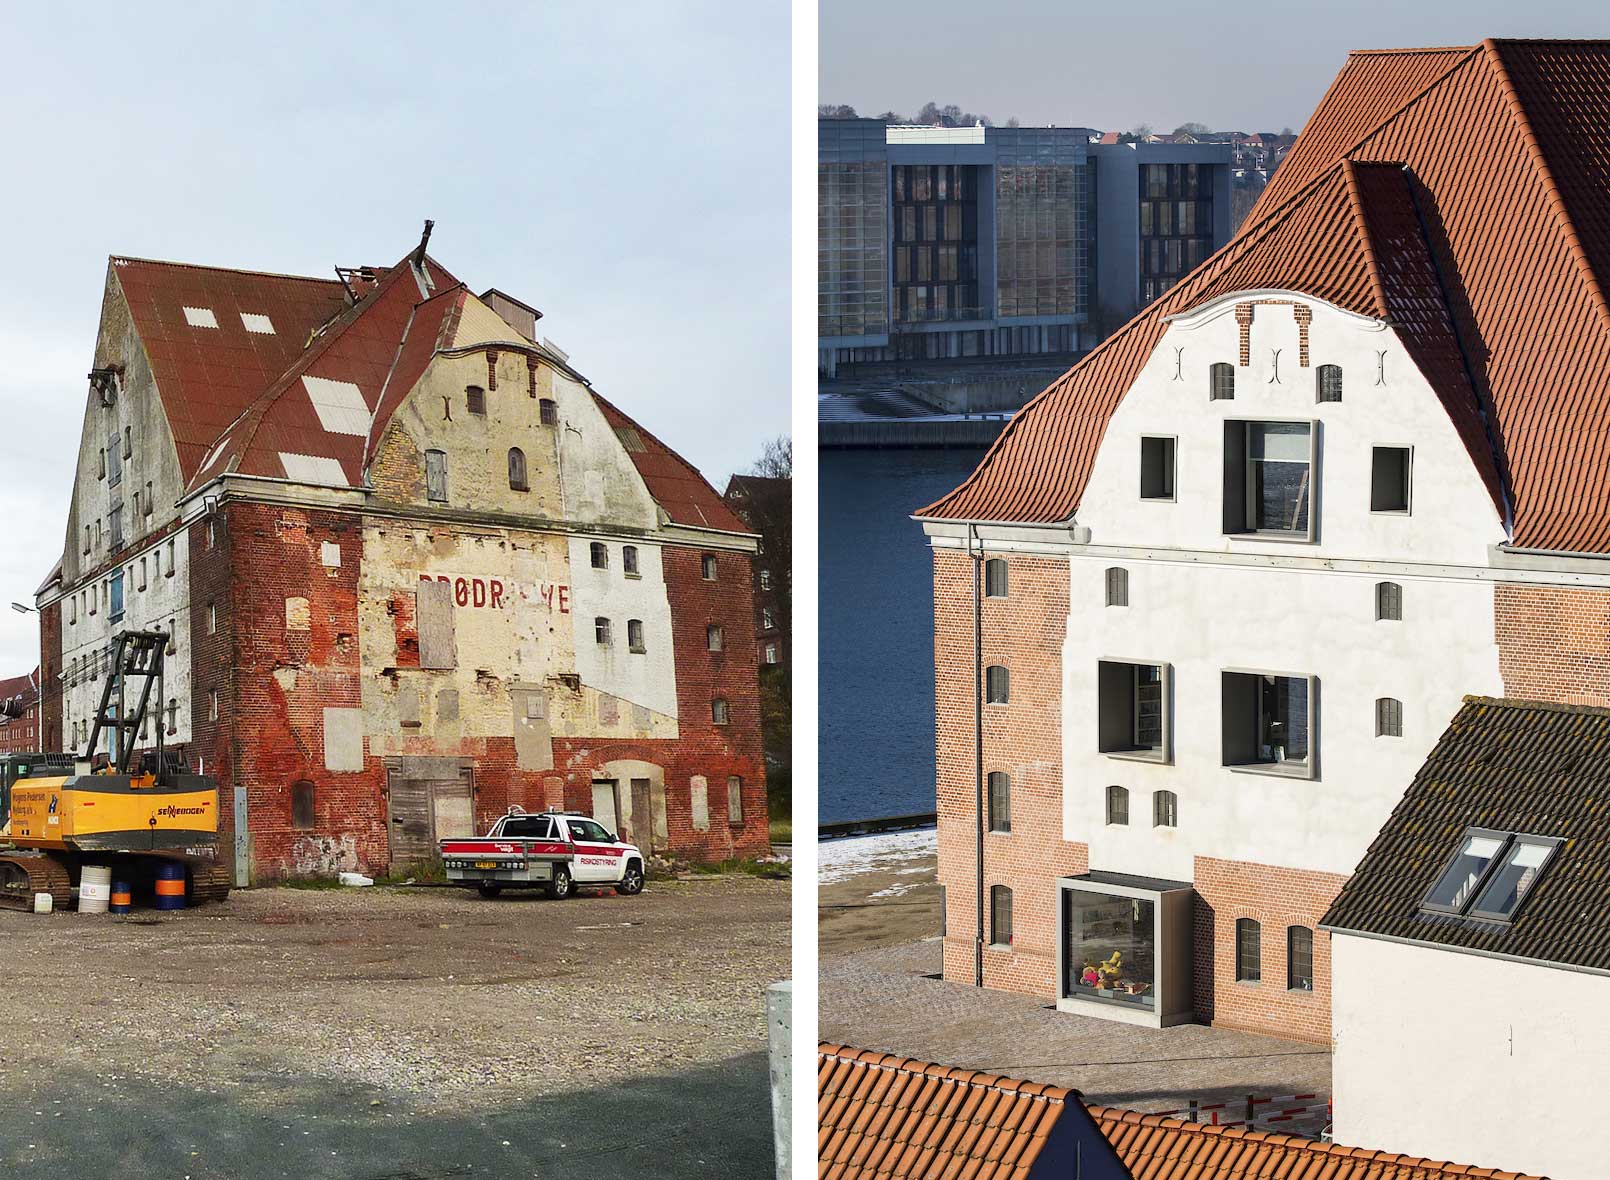 Efter restaureringen står det gamle pakhus igen med sine karakteristiske facader i jugendstil. Foto: Sønderborg Kommune / AART architects